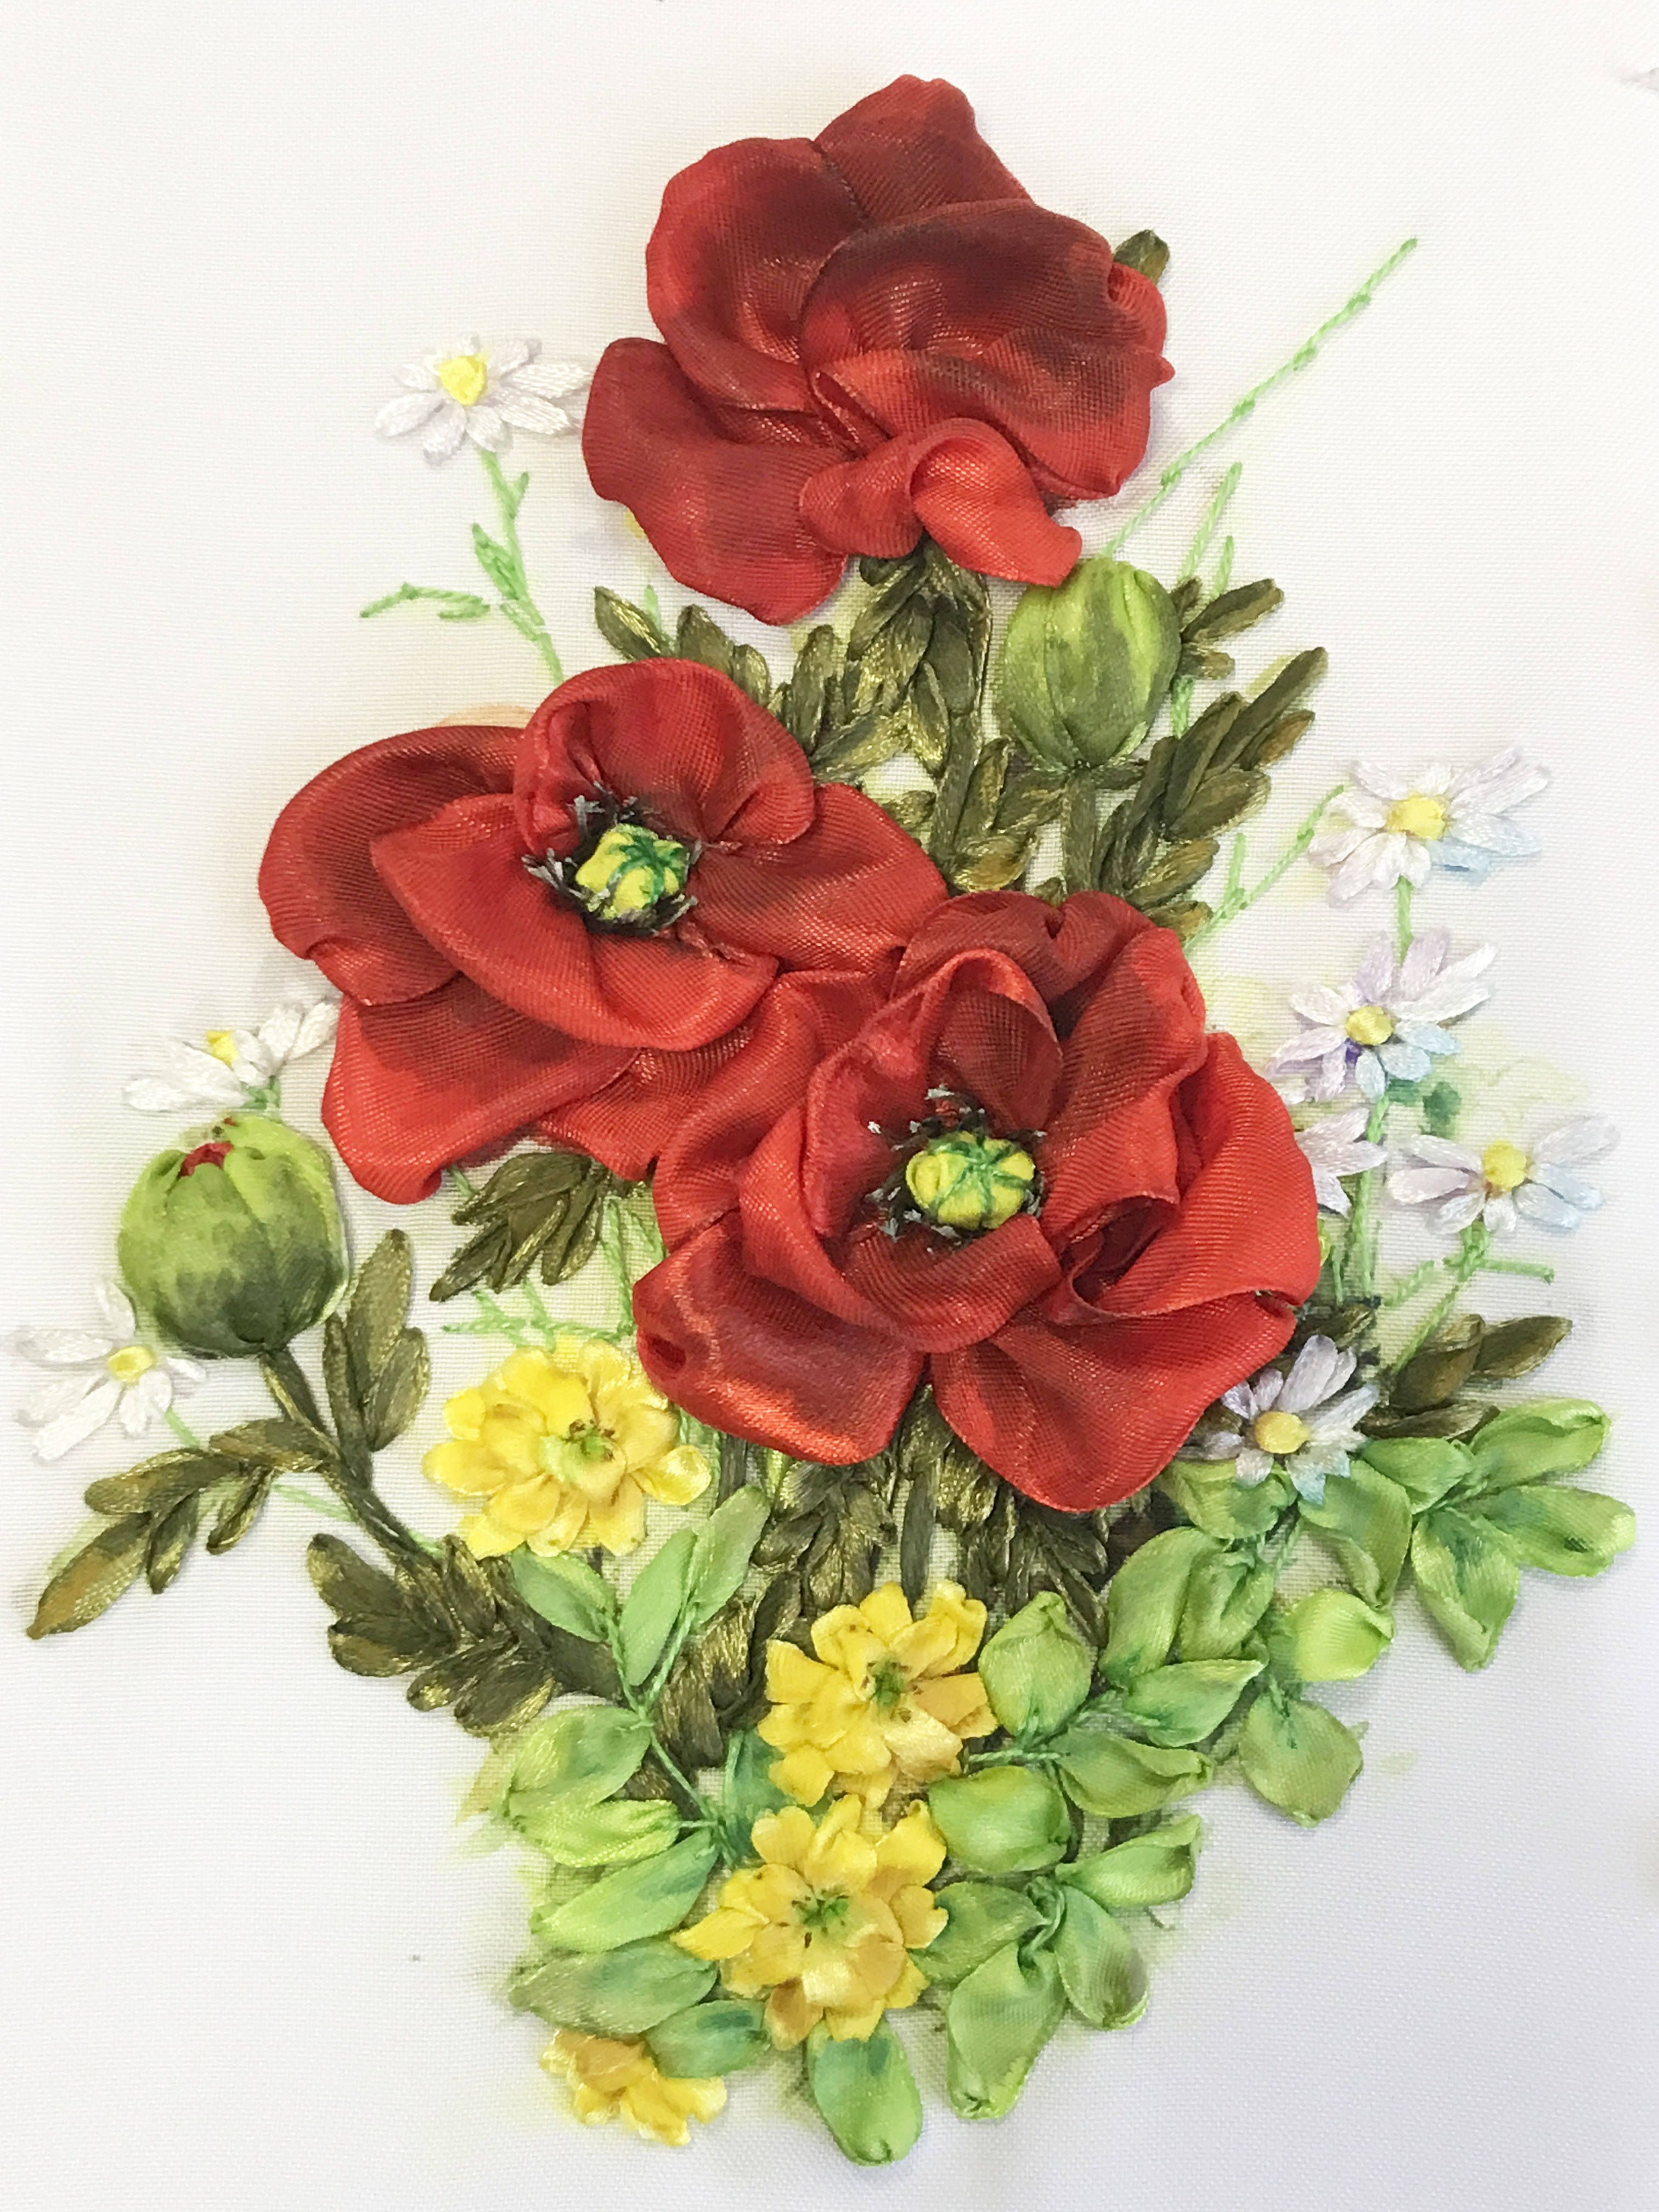 Красивый и простой цветок из атласной ленты /A beautiful and simple flower made from satin ribbon